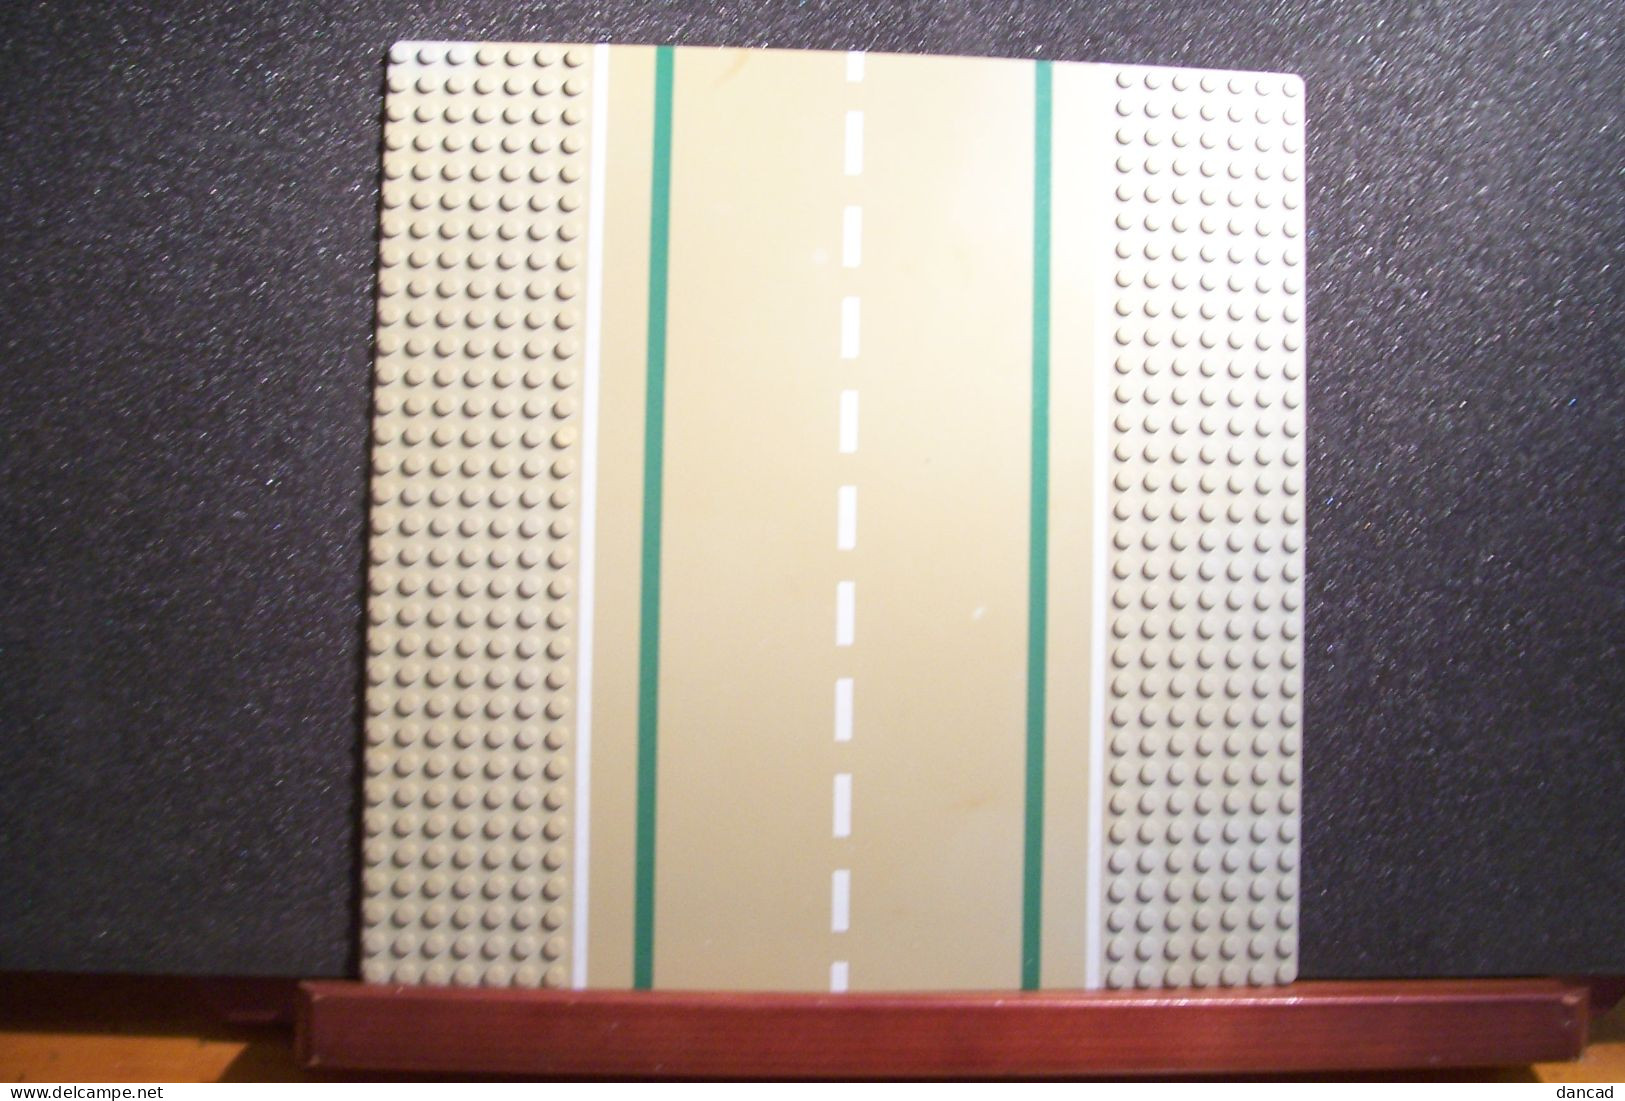 LOT De DEUX  MODULES  ( Plaques )  - LEGO - 255X255 Mm (  C . Lego Group ) - OCCASION -( Pas De Reflet Sur L'original ) - Ohne Zuordnung